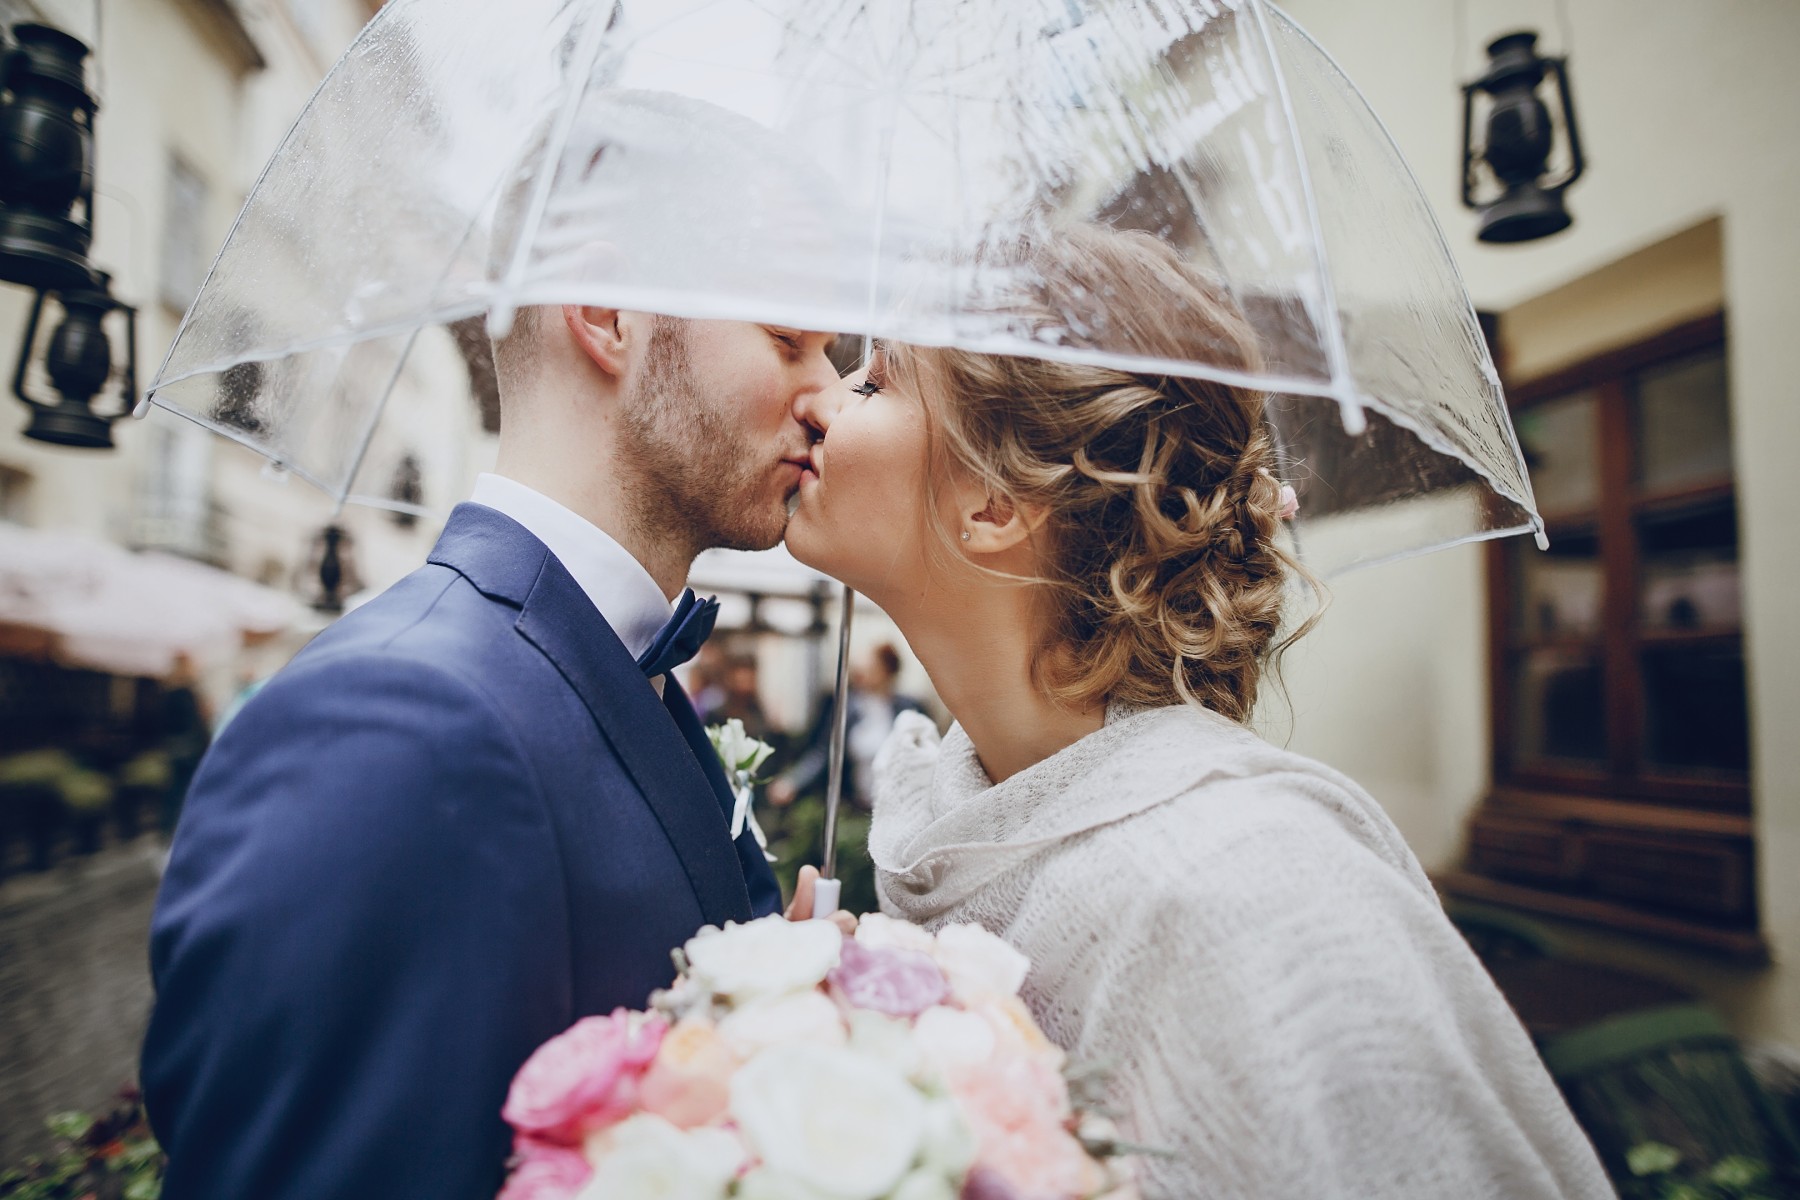 Nepokaž si svatbu! Aneb 7 nejčastějších chyb, které nevěsty dělají